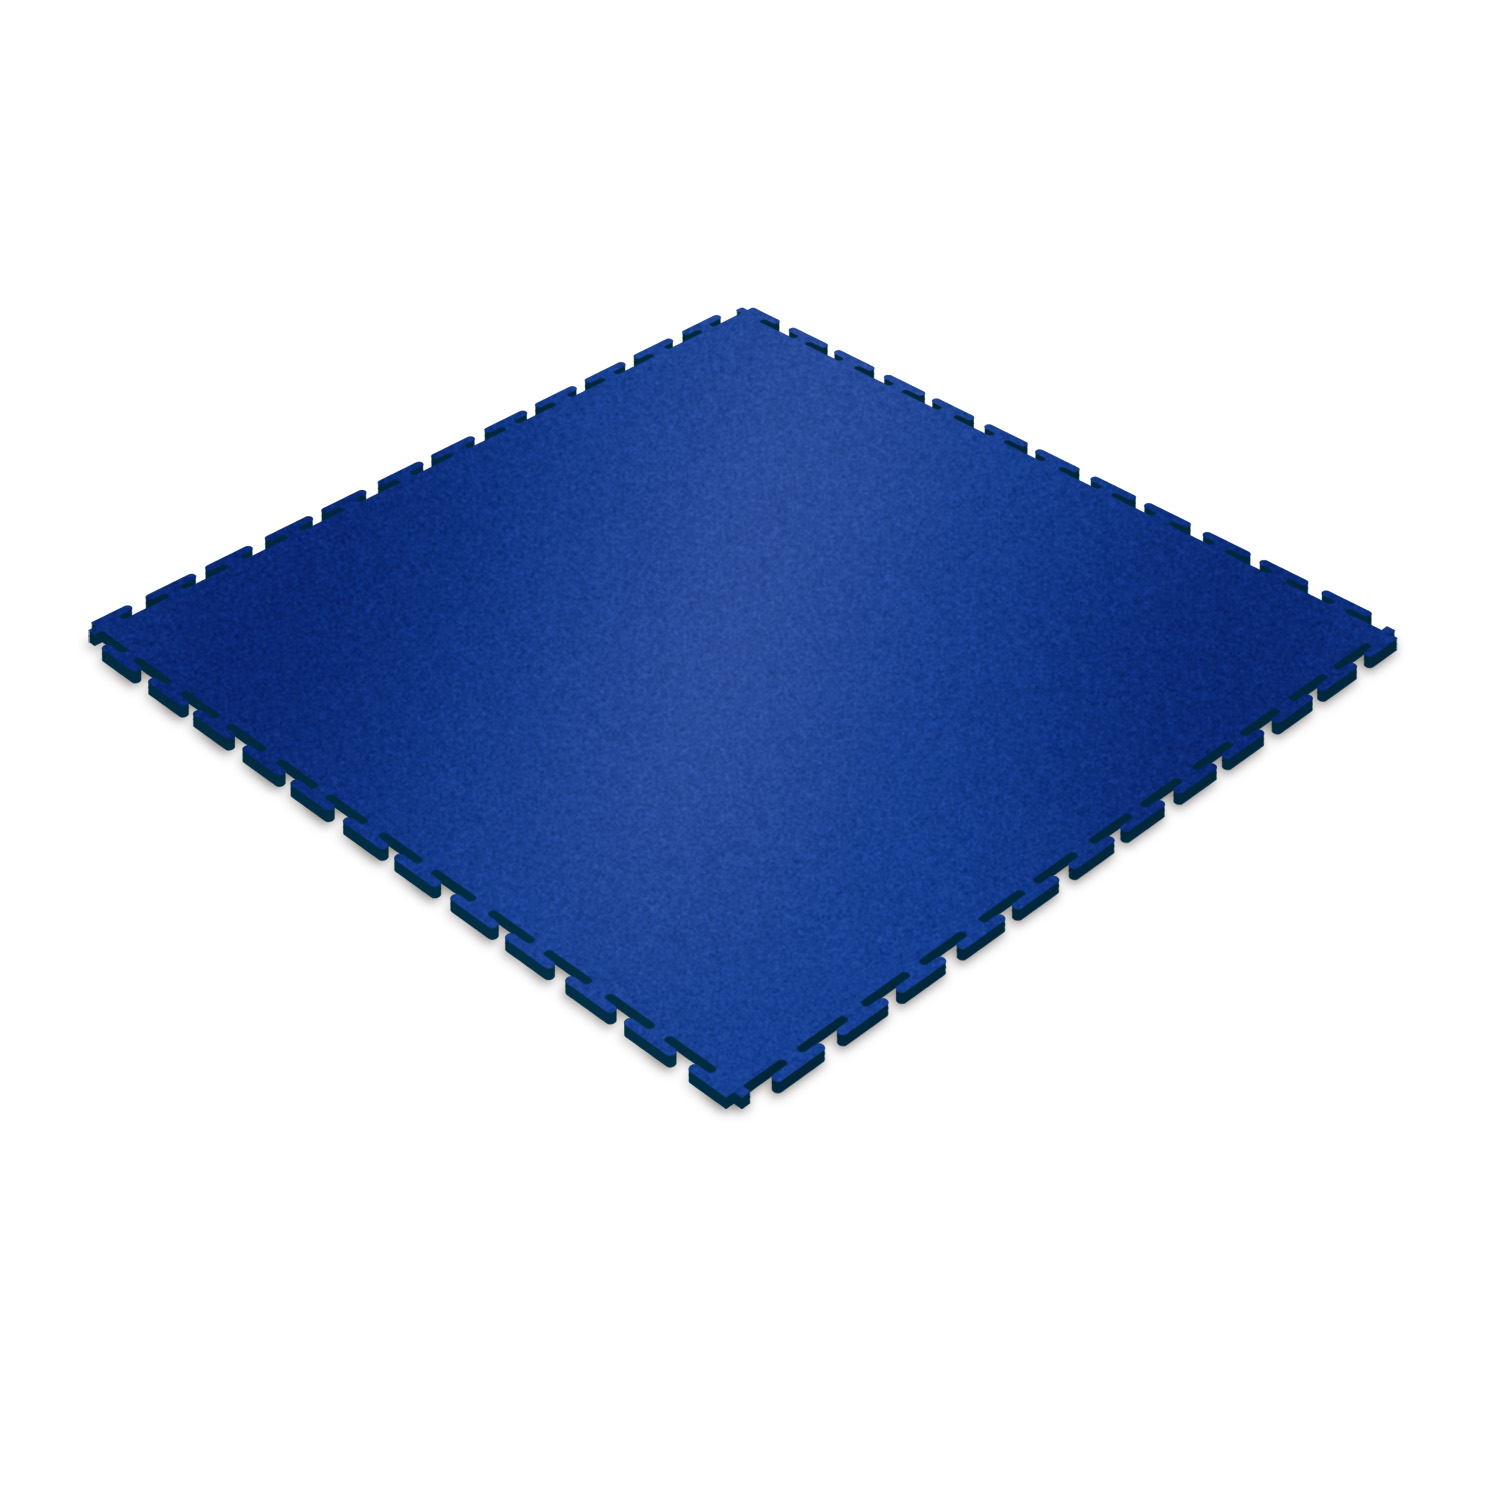 Heavy-duty floor tile (blue/textured)